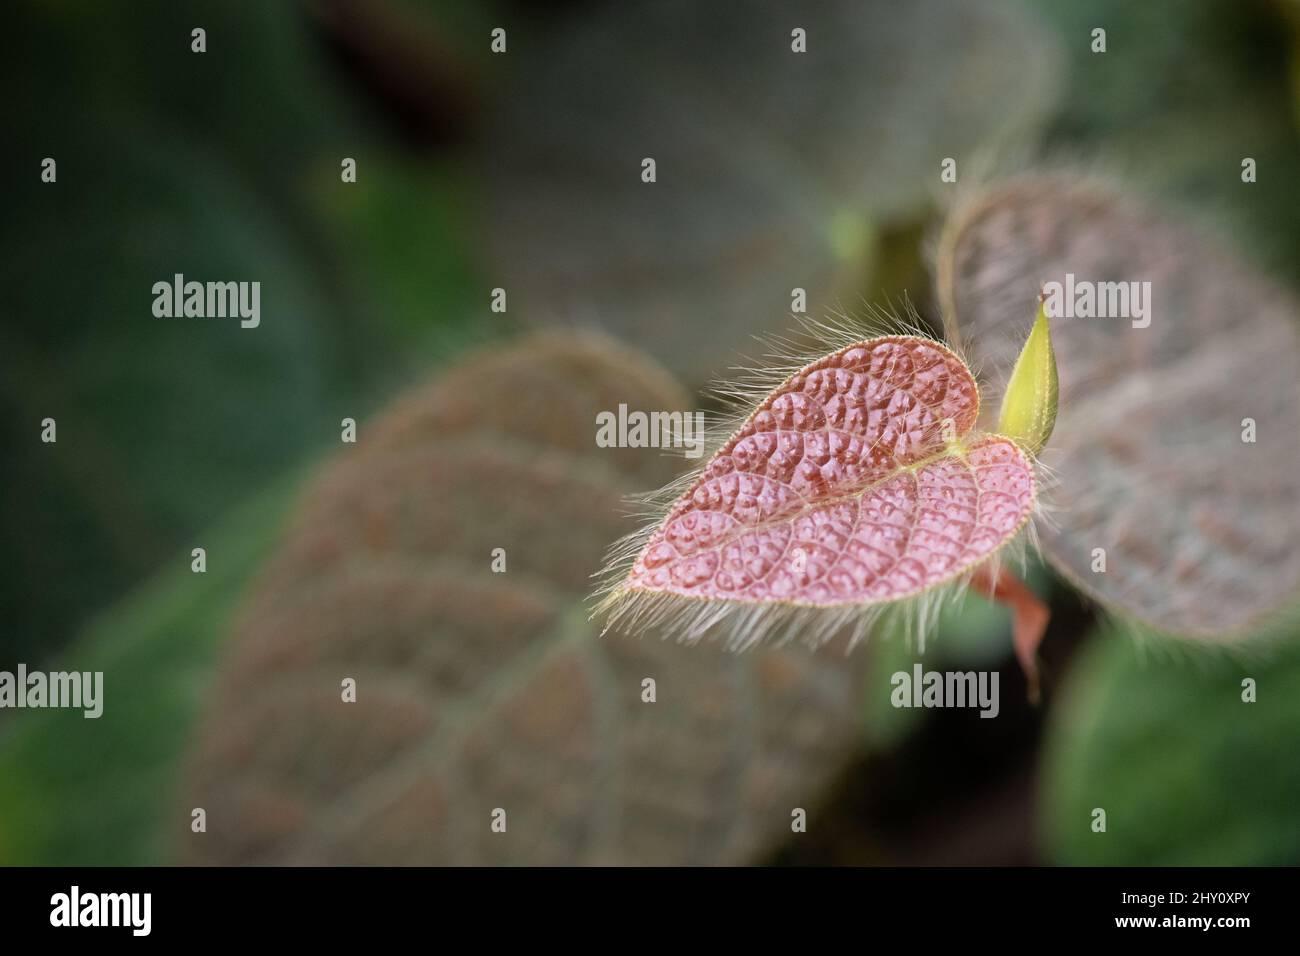 Closeup shot of a fuzzy Episcia leaf Stock Photo